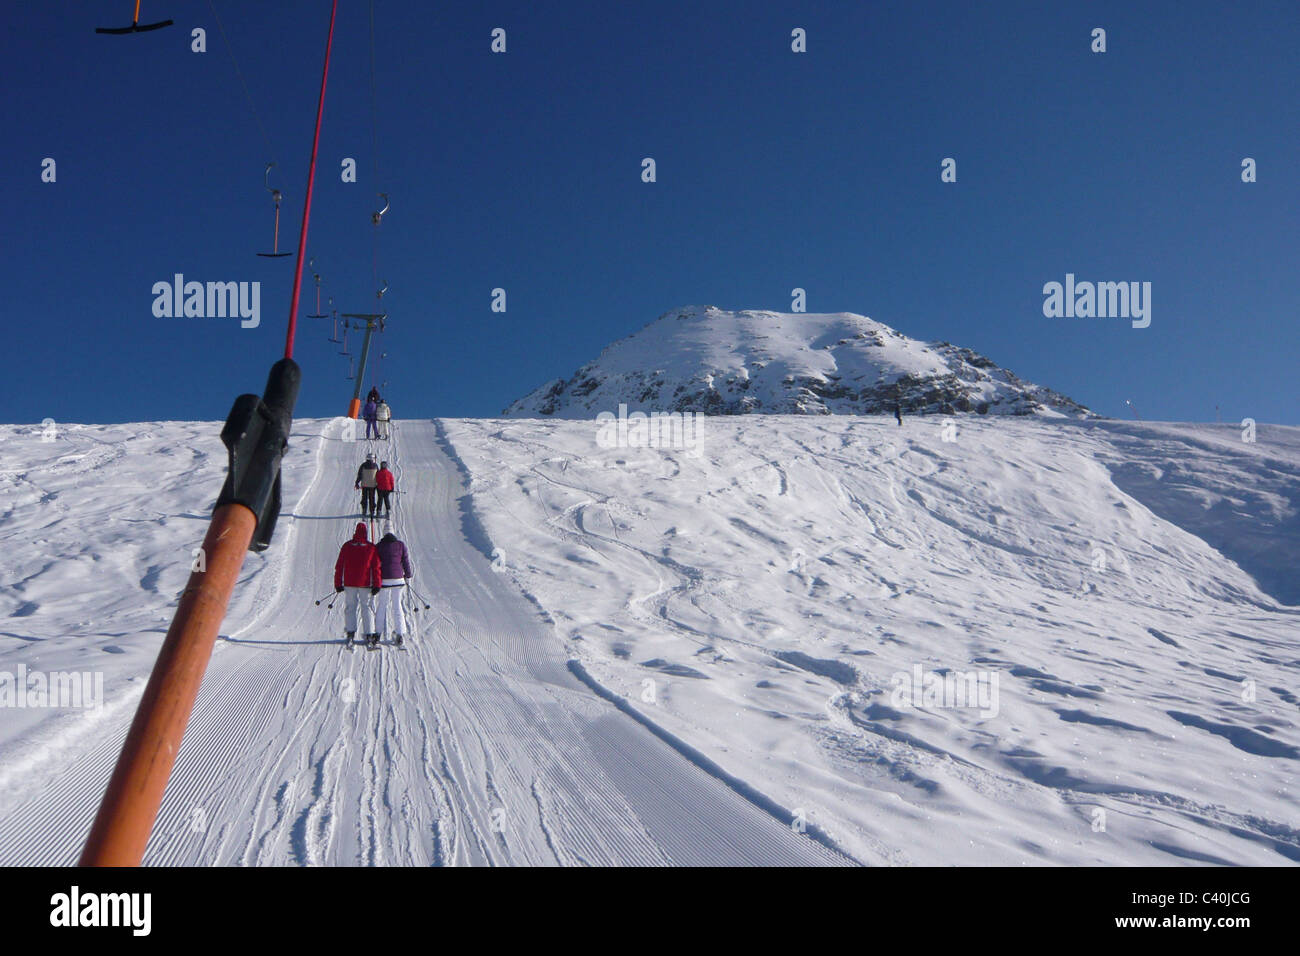 Österreich, Lech, ski-Lift, Aufhänger Lift, Skigebiet, Winter, Schnee Stockfoto